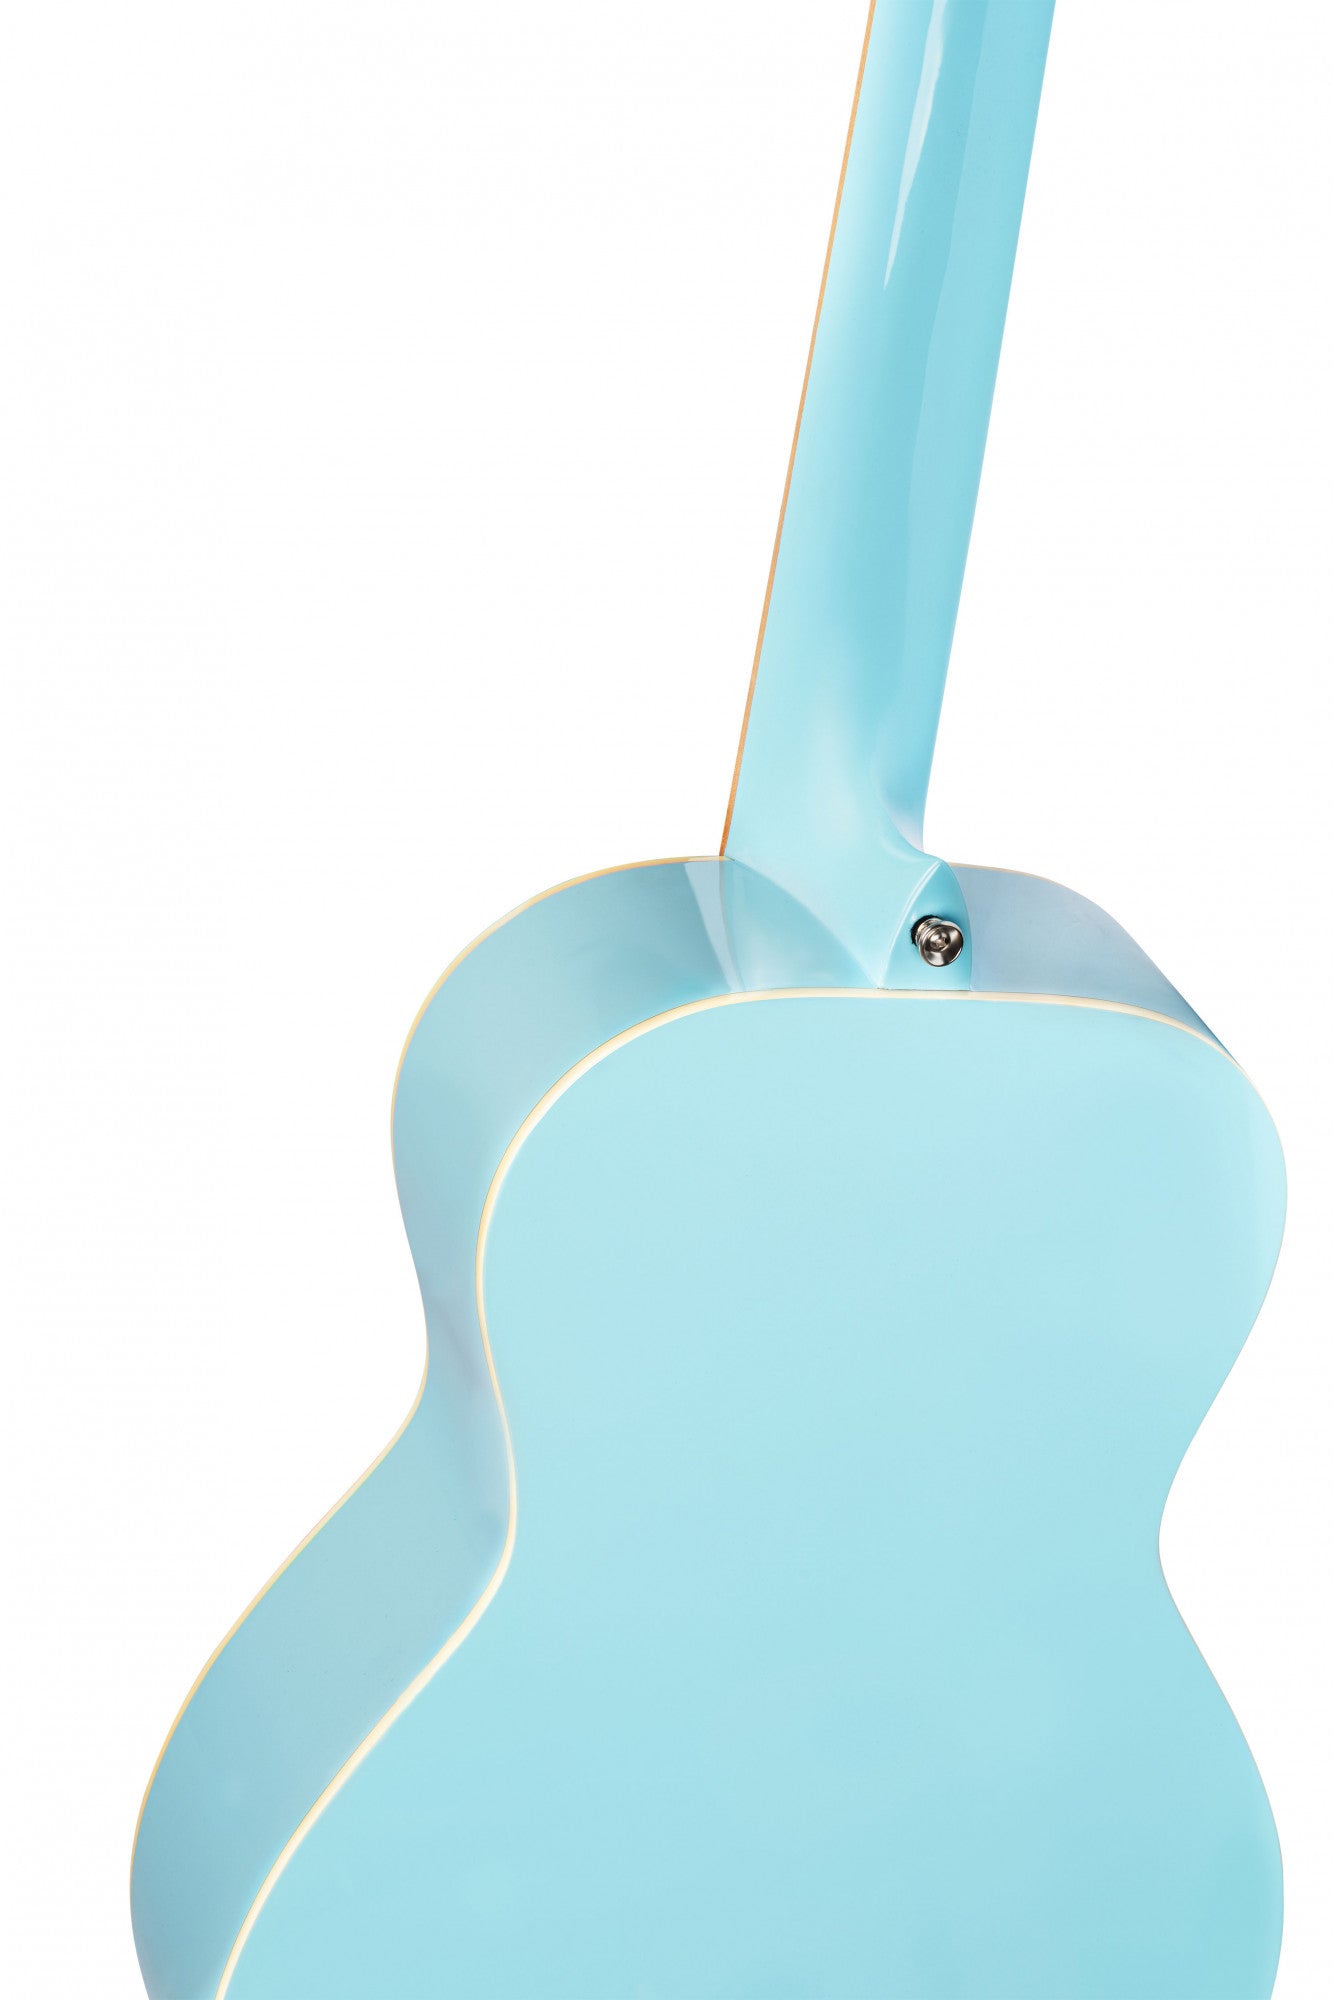 Ortega Gaucho Series RGA-SKY - Parlour Classical Guitar - Sky Blue inc. Matching Bag